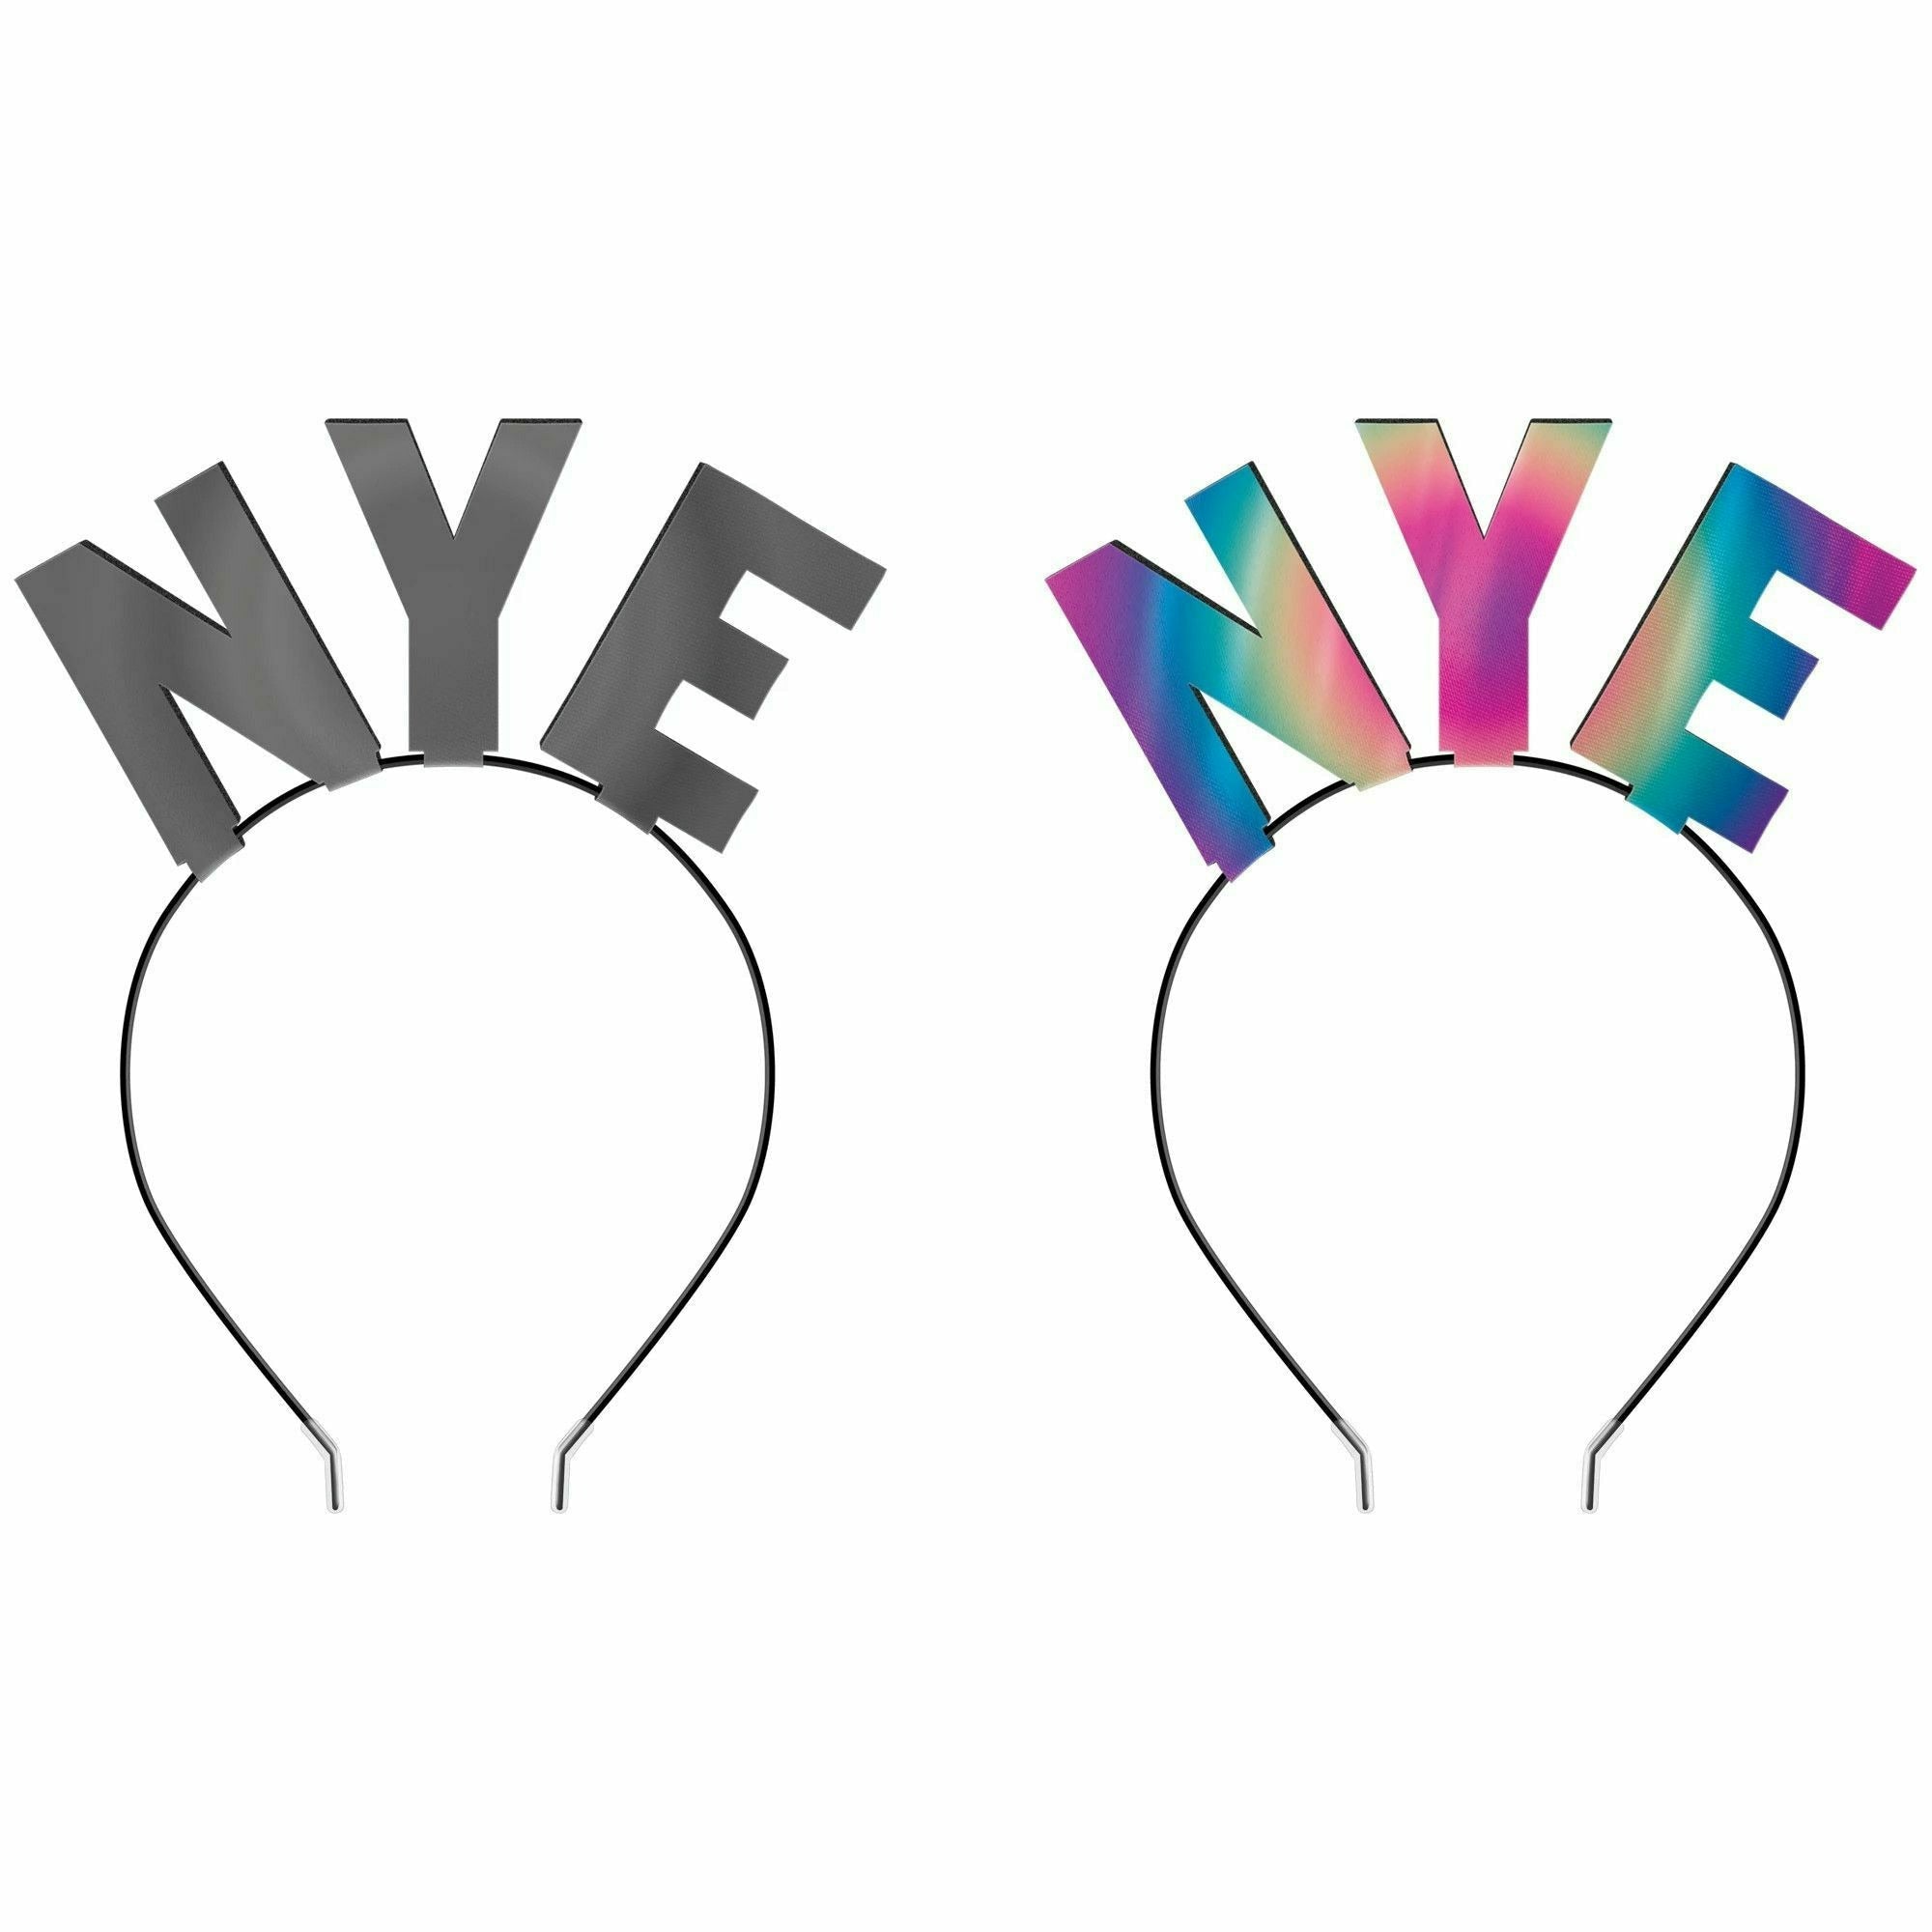 Amscan HOLIDAY: NEW YEAR'S New Year's Eve Illuminating Headband